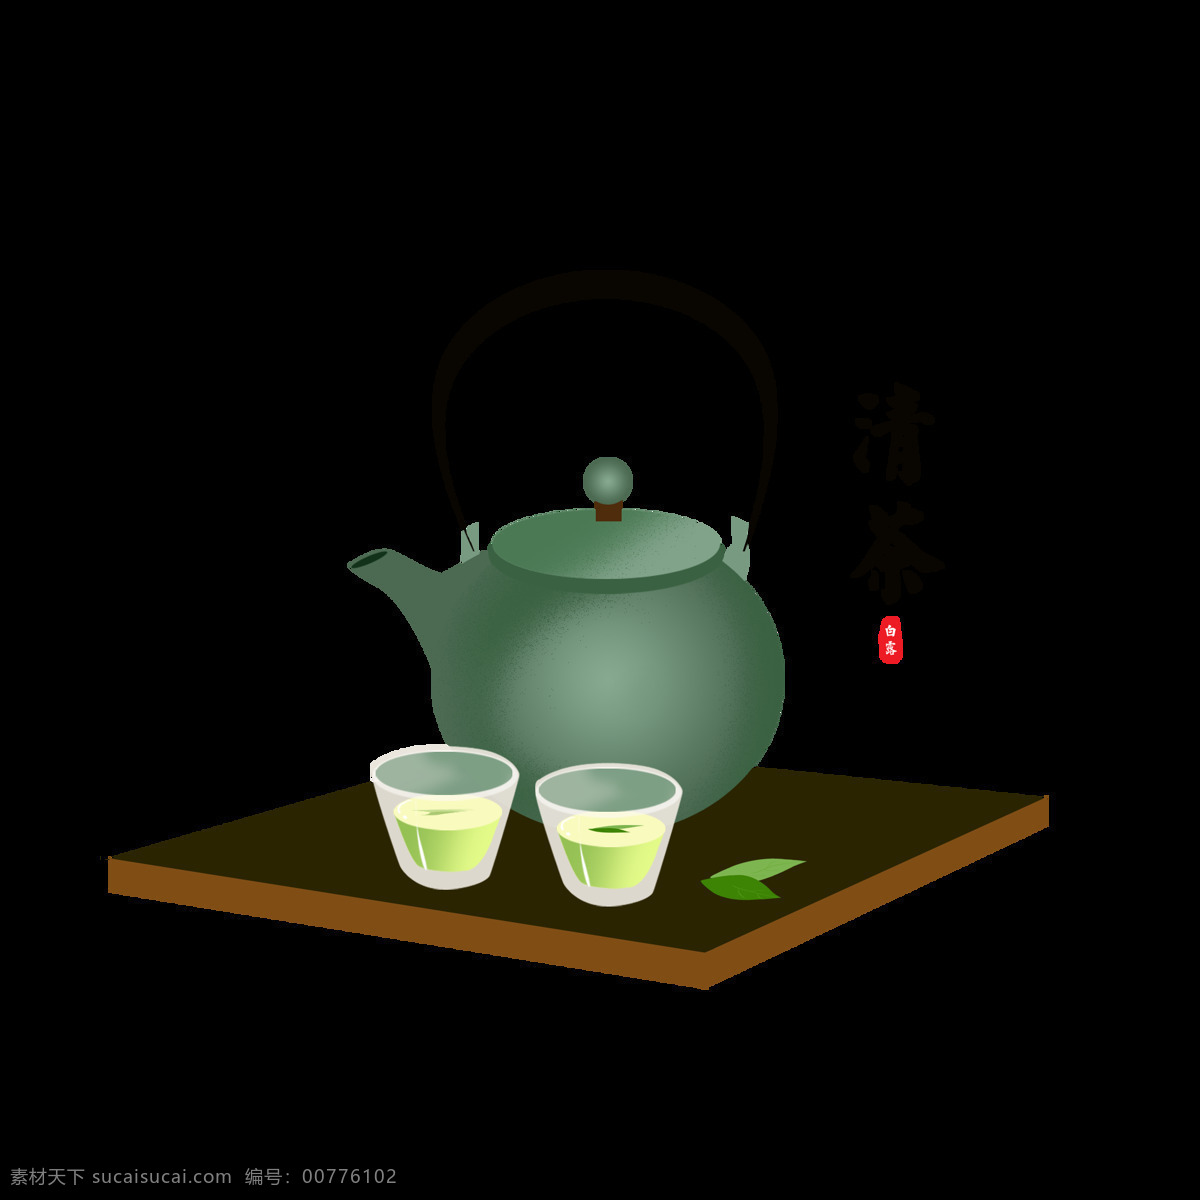 原创 白露 清茶 茶壶 绿色 清新 节气 元素 清新简约 绿茶